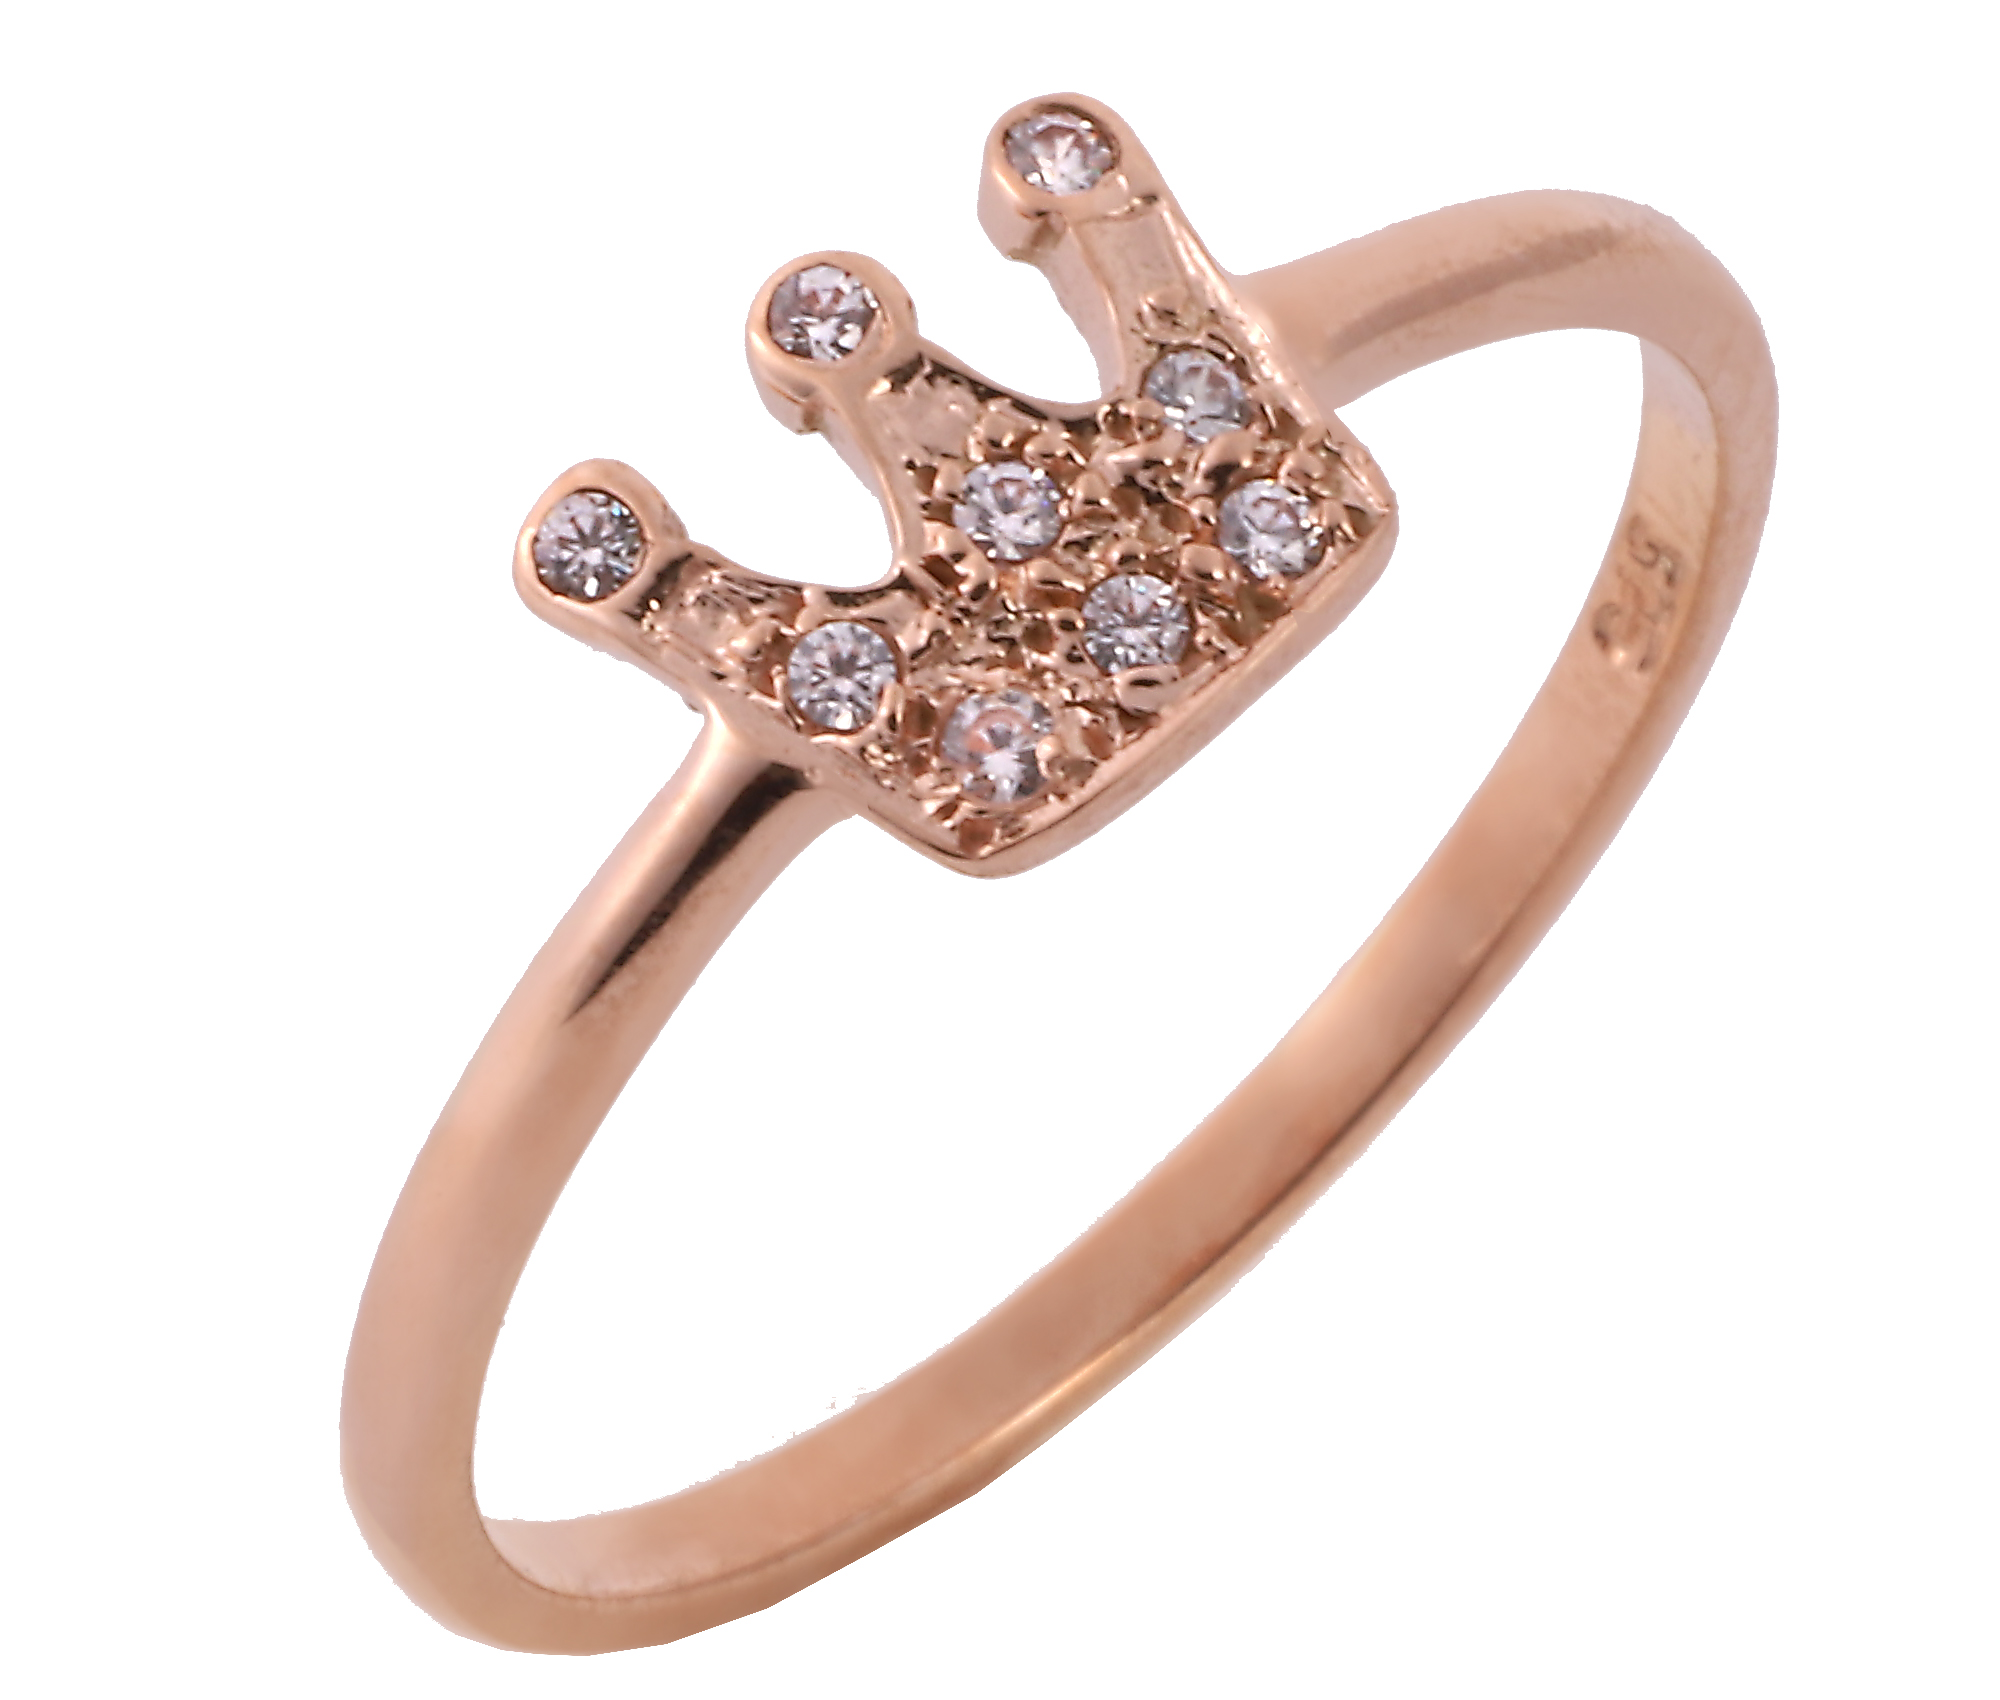 Δαχτυλίδι Κολρωνα με Ζιργκόν Ροζ Χρυσός Κ9 - 16055